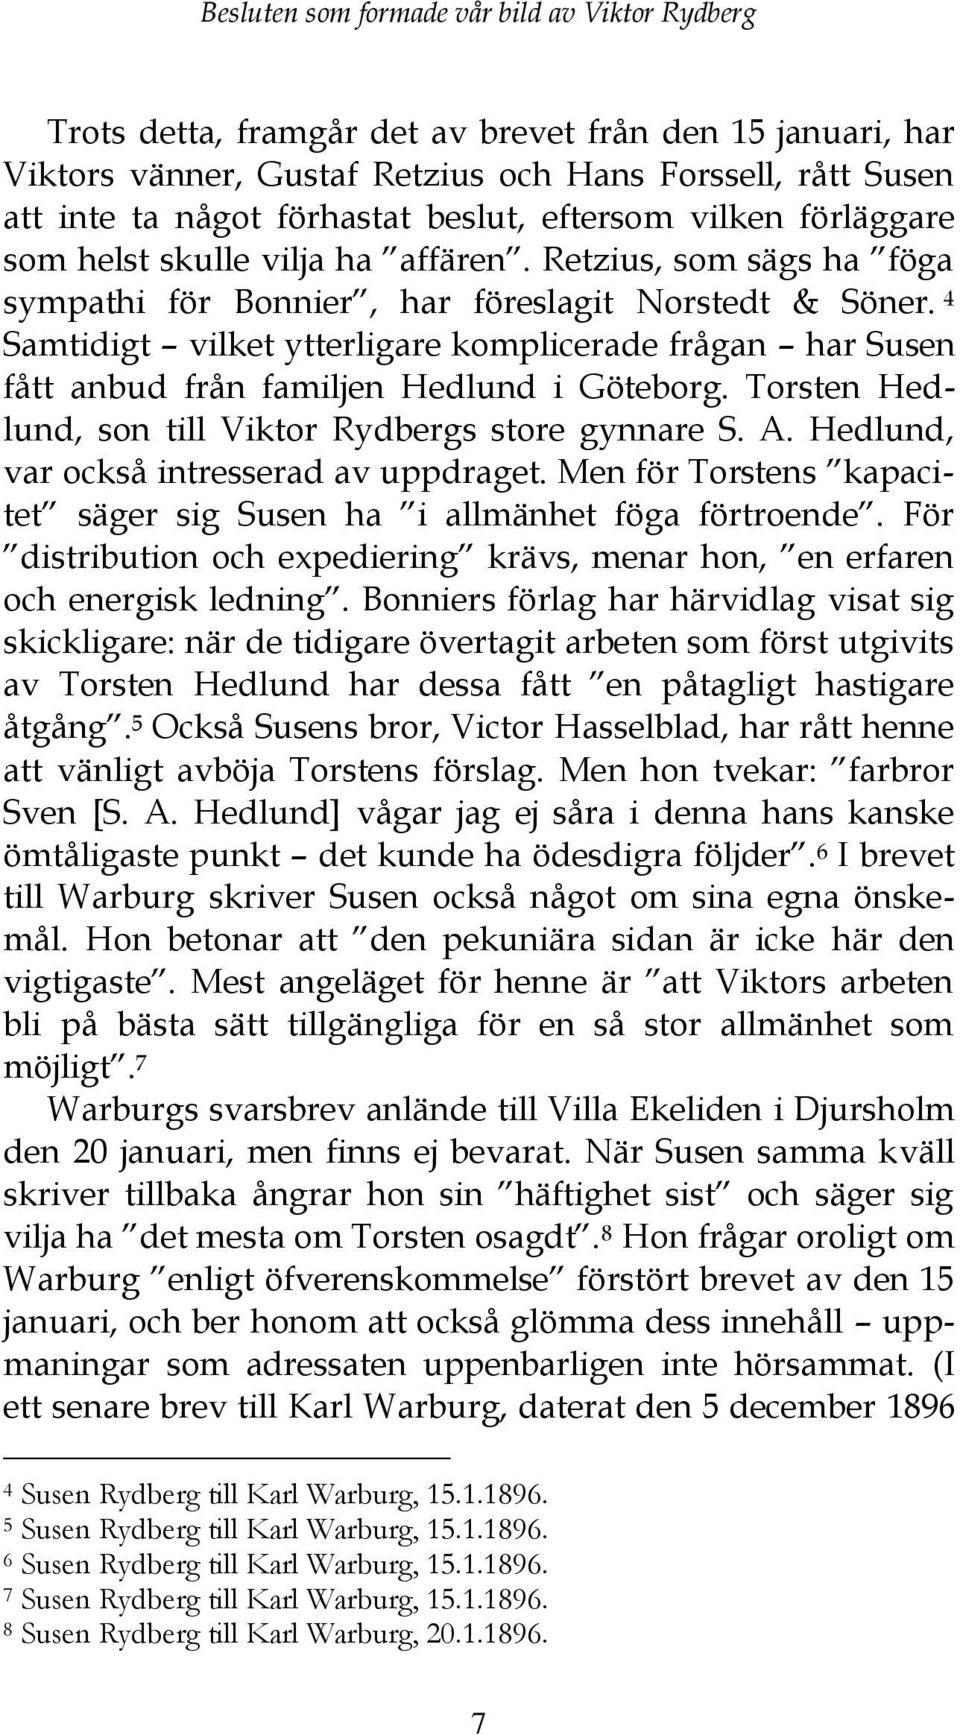 4 Samtidigt vilket ytterligare komplicerade frågan har Susen fått anbud från familjen Hedlund i Göteborg. Torsten Hedlund, son till Viktor Rydbergs store gynnare S. A.